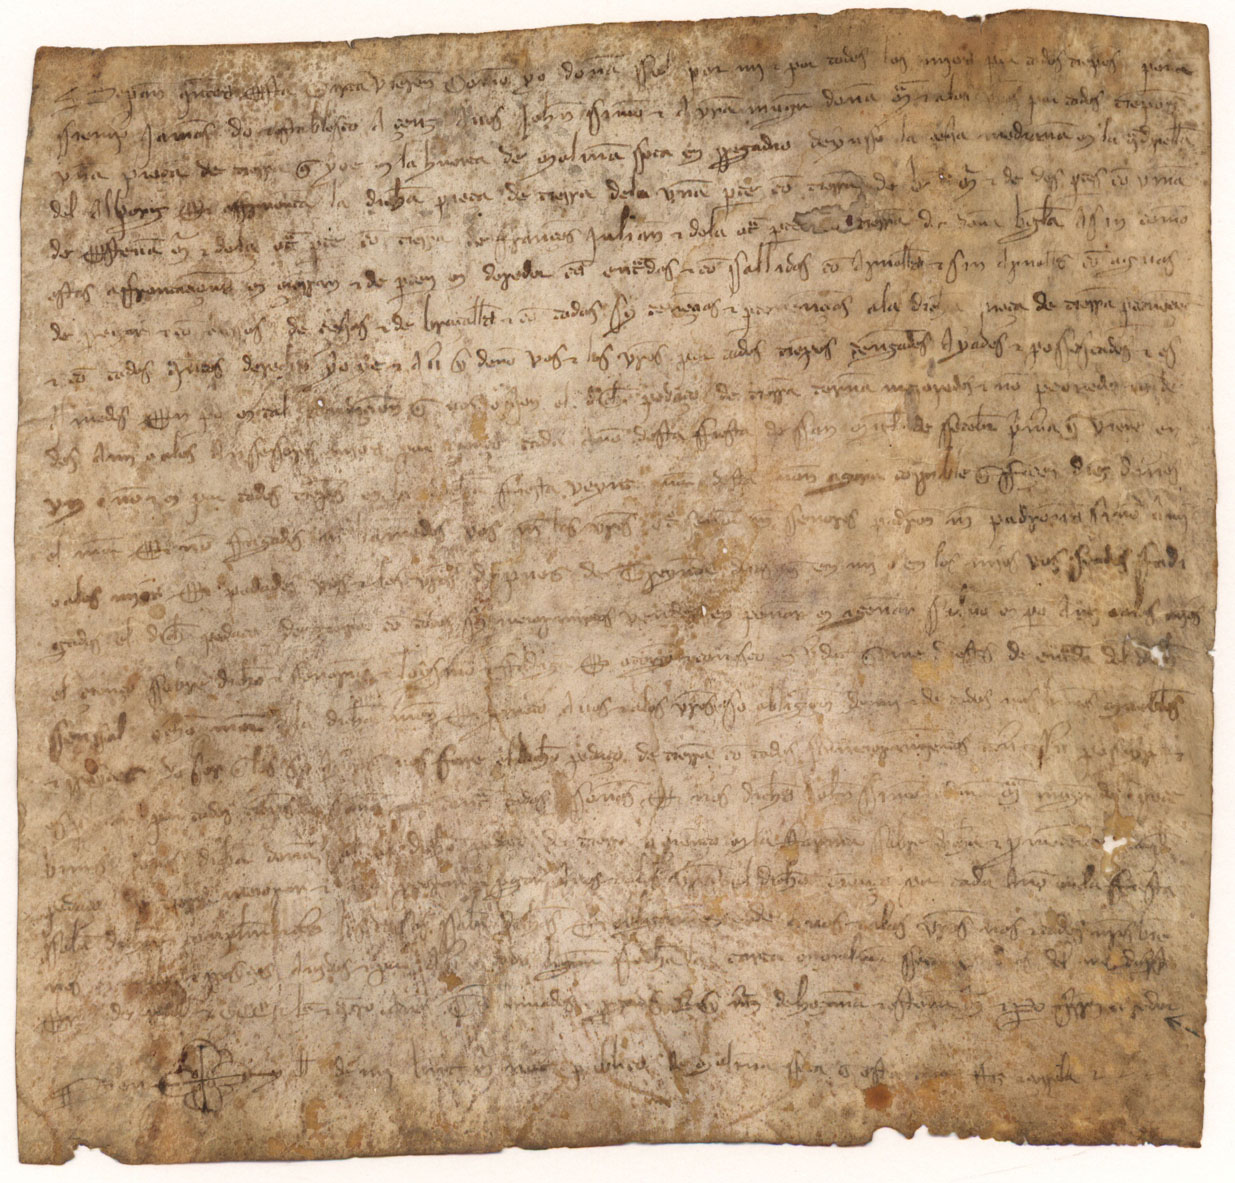 Carta de establecimiento de censo de doña Sol a favor de Juan Simón y María, su mujer, sobre una pieza de tierra en la huerta de Molina Seca.